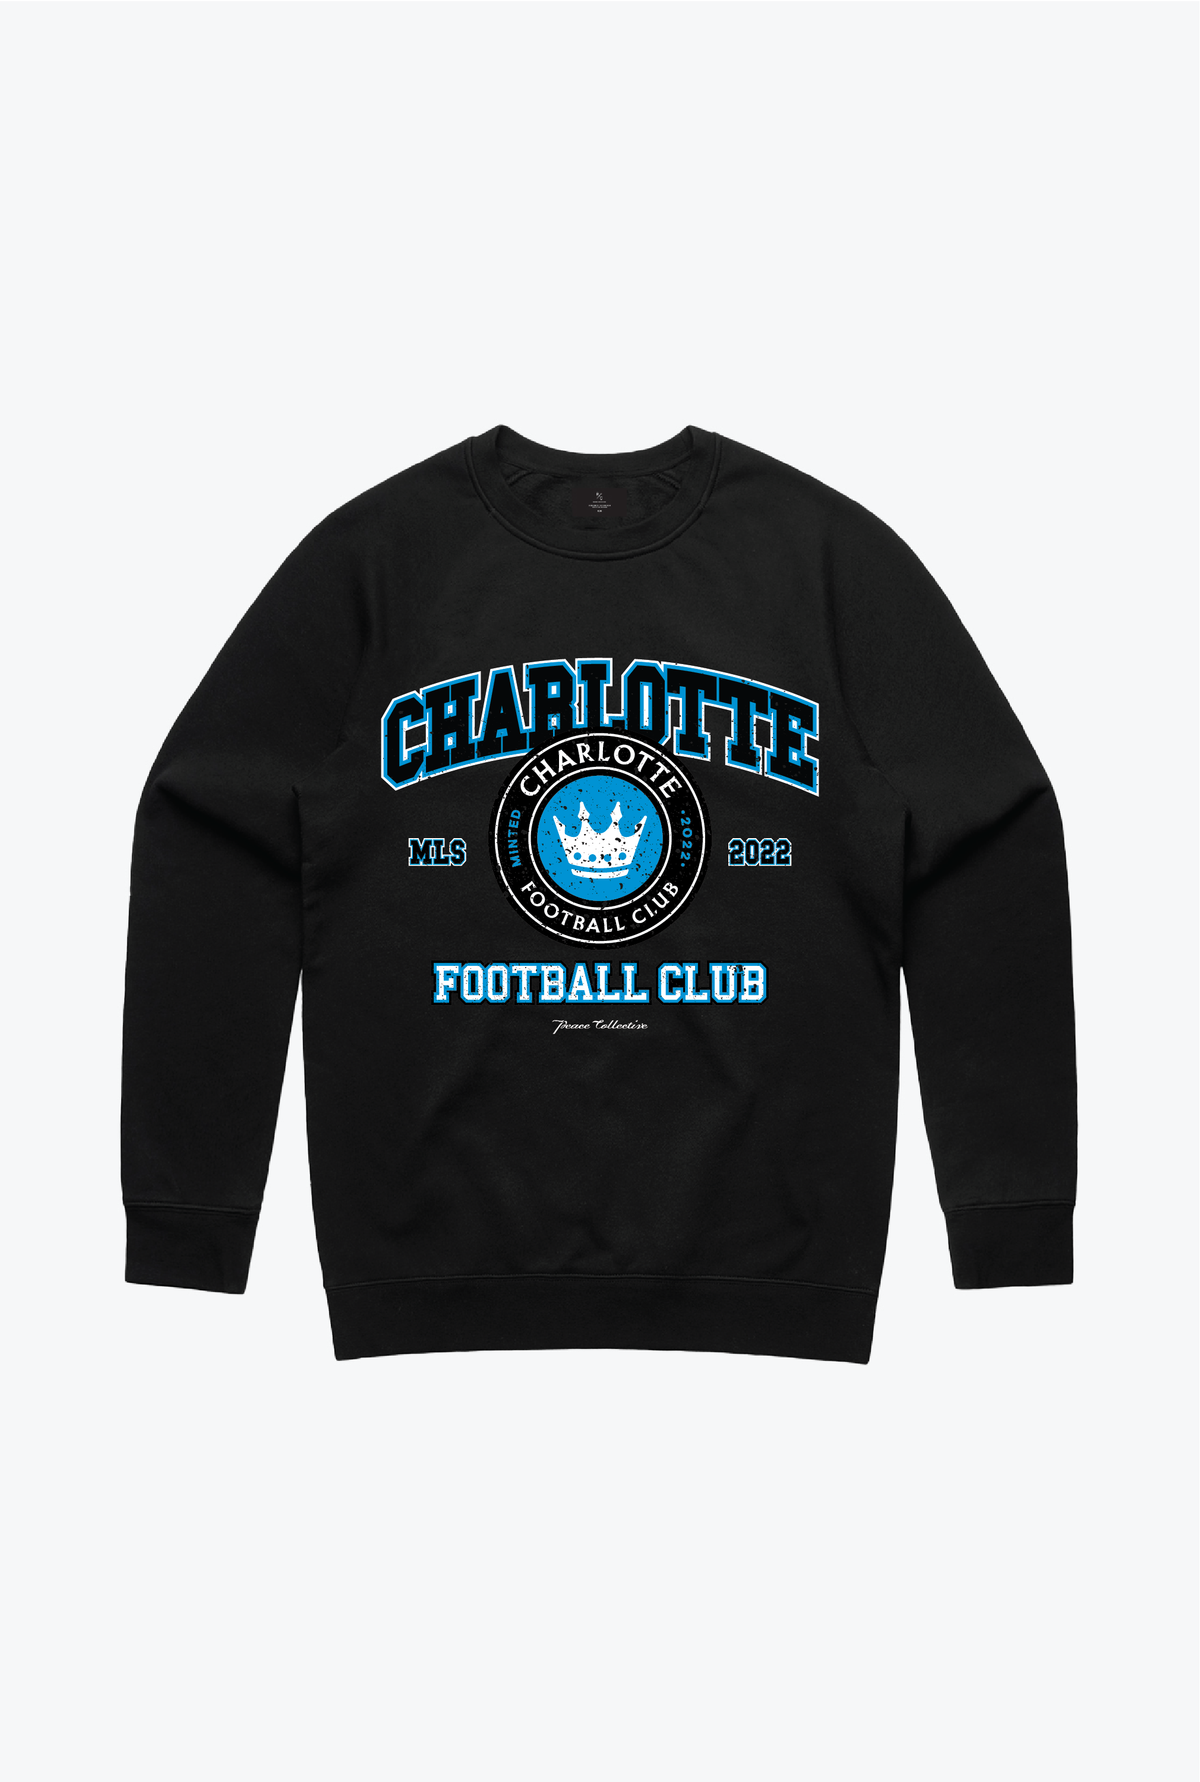 Charlotte FC Vintage Washed Crewneck - Black